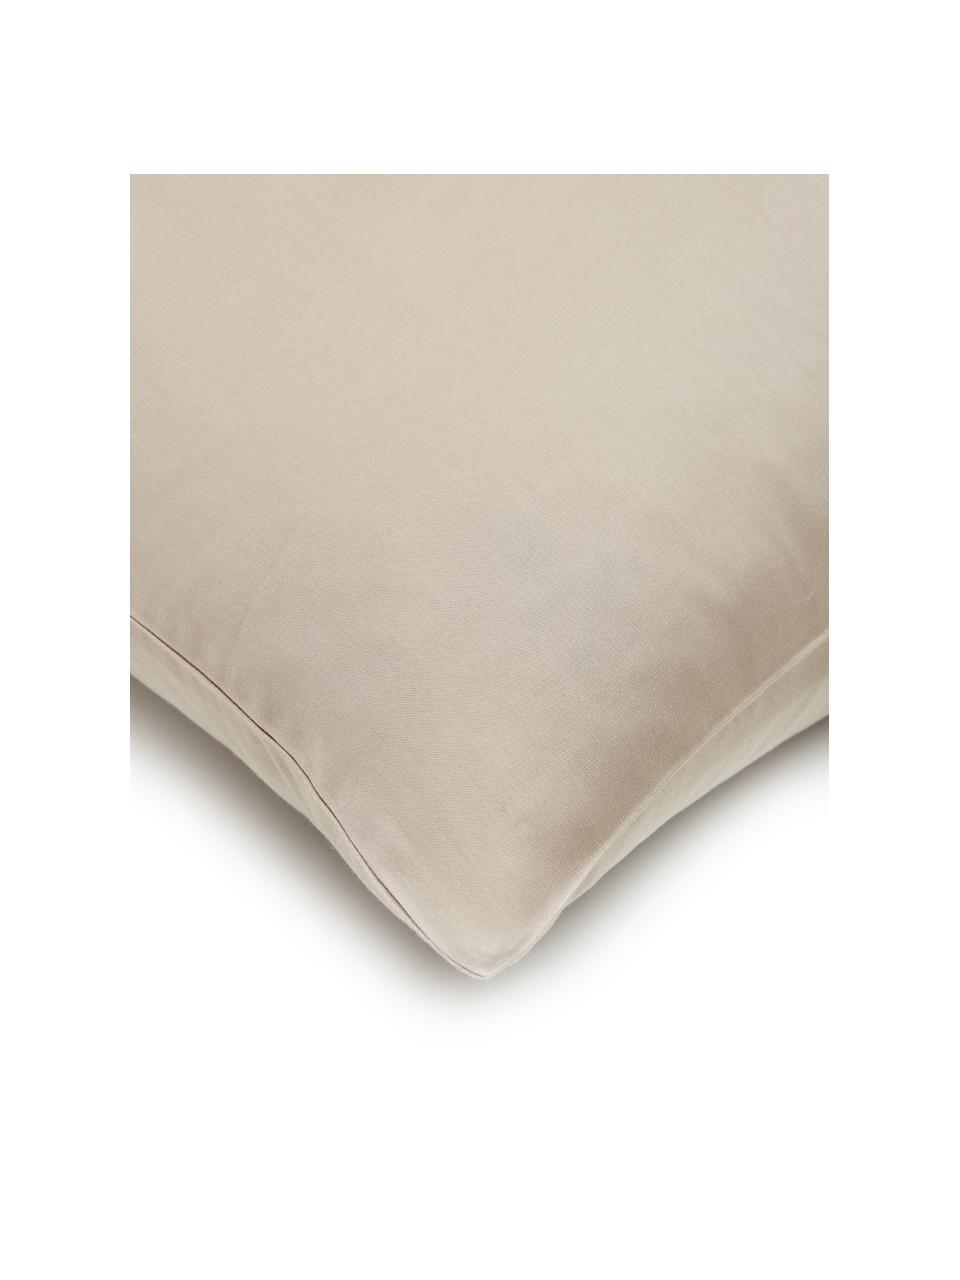 Pościel z satyny bawełnianej Comfort, Taupe, 200 x 200 cm + 2 poduszki 80 x 80 cm